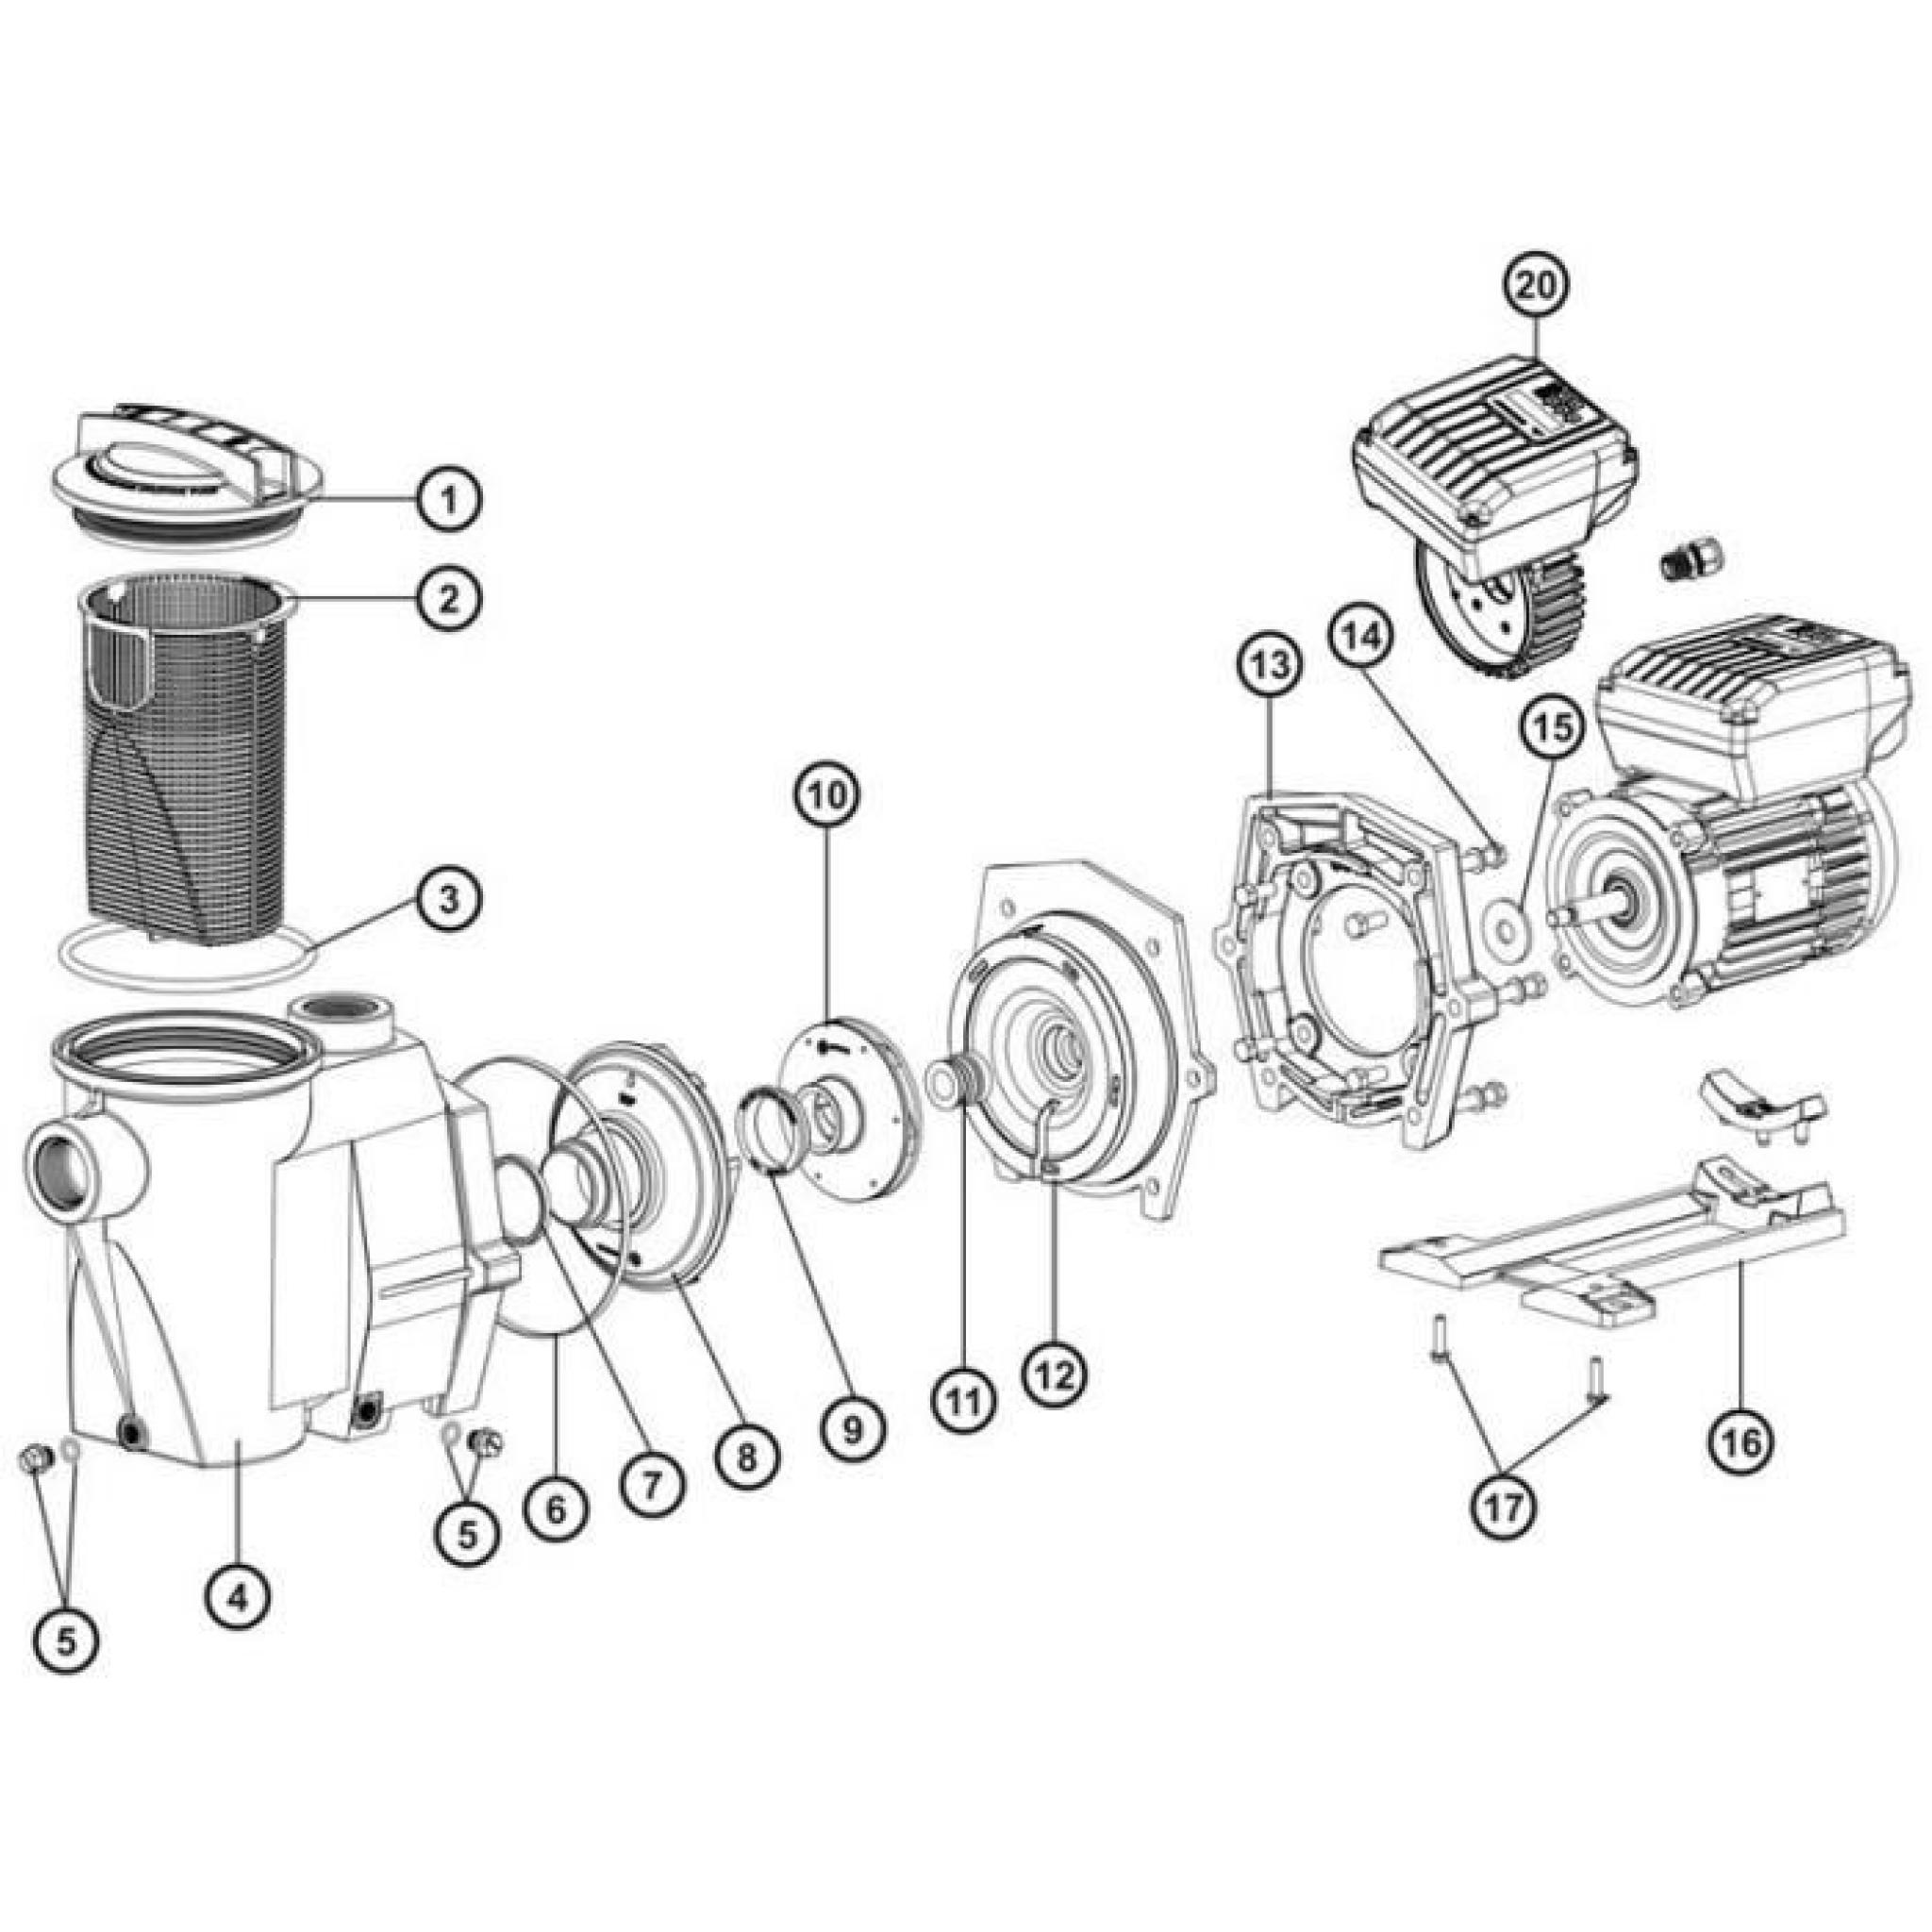 N°17 - Vis de support pour pompe de filtration POWER-FLO modèle SP1705/SP1710/SP1775 et SP1516